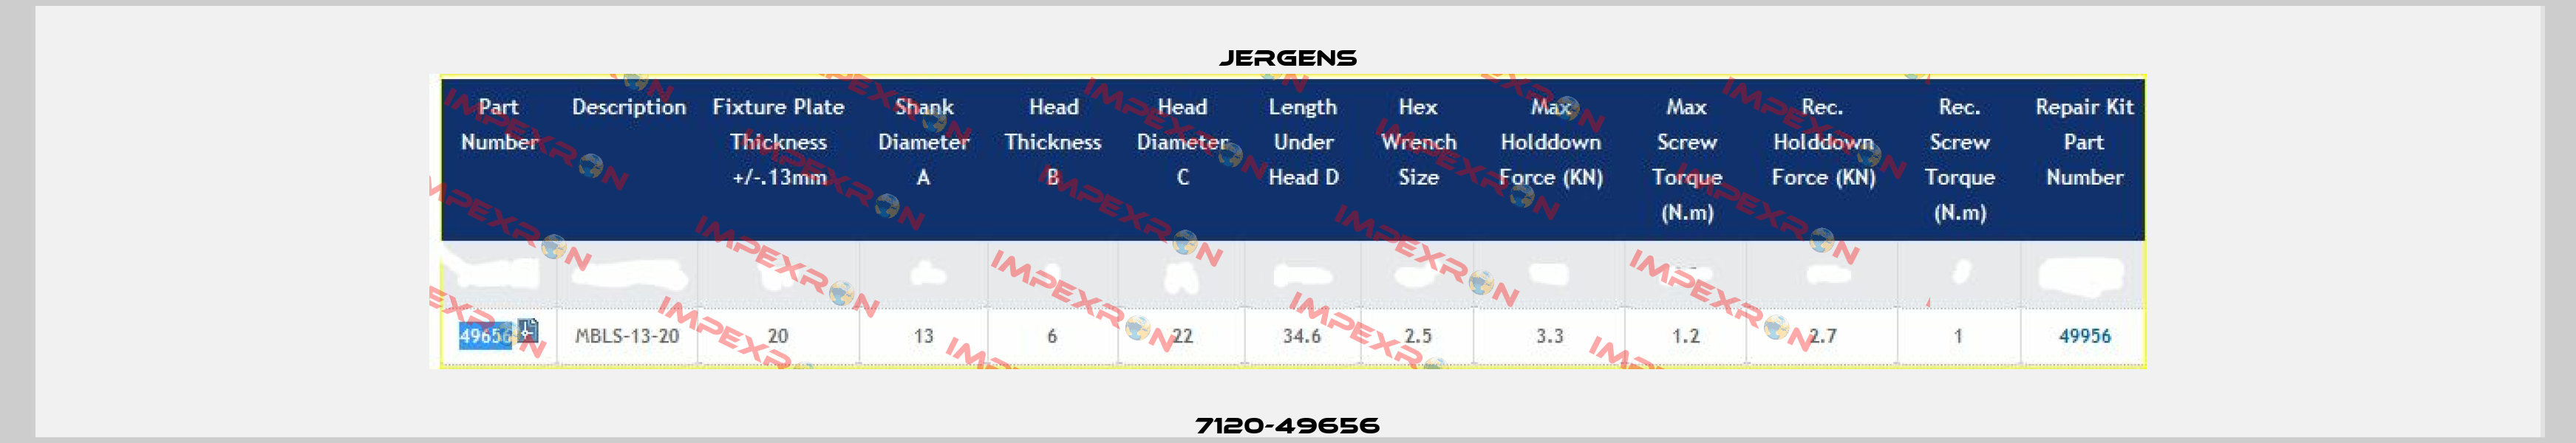 7120-49656 Jergens